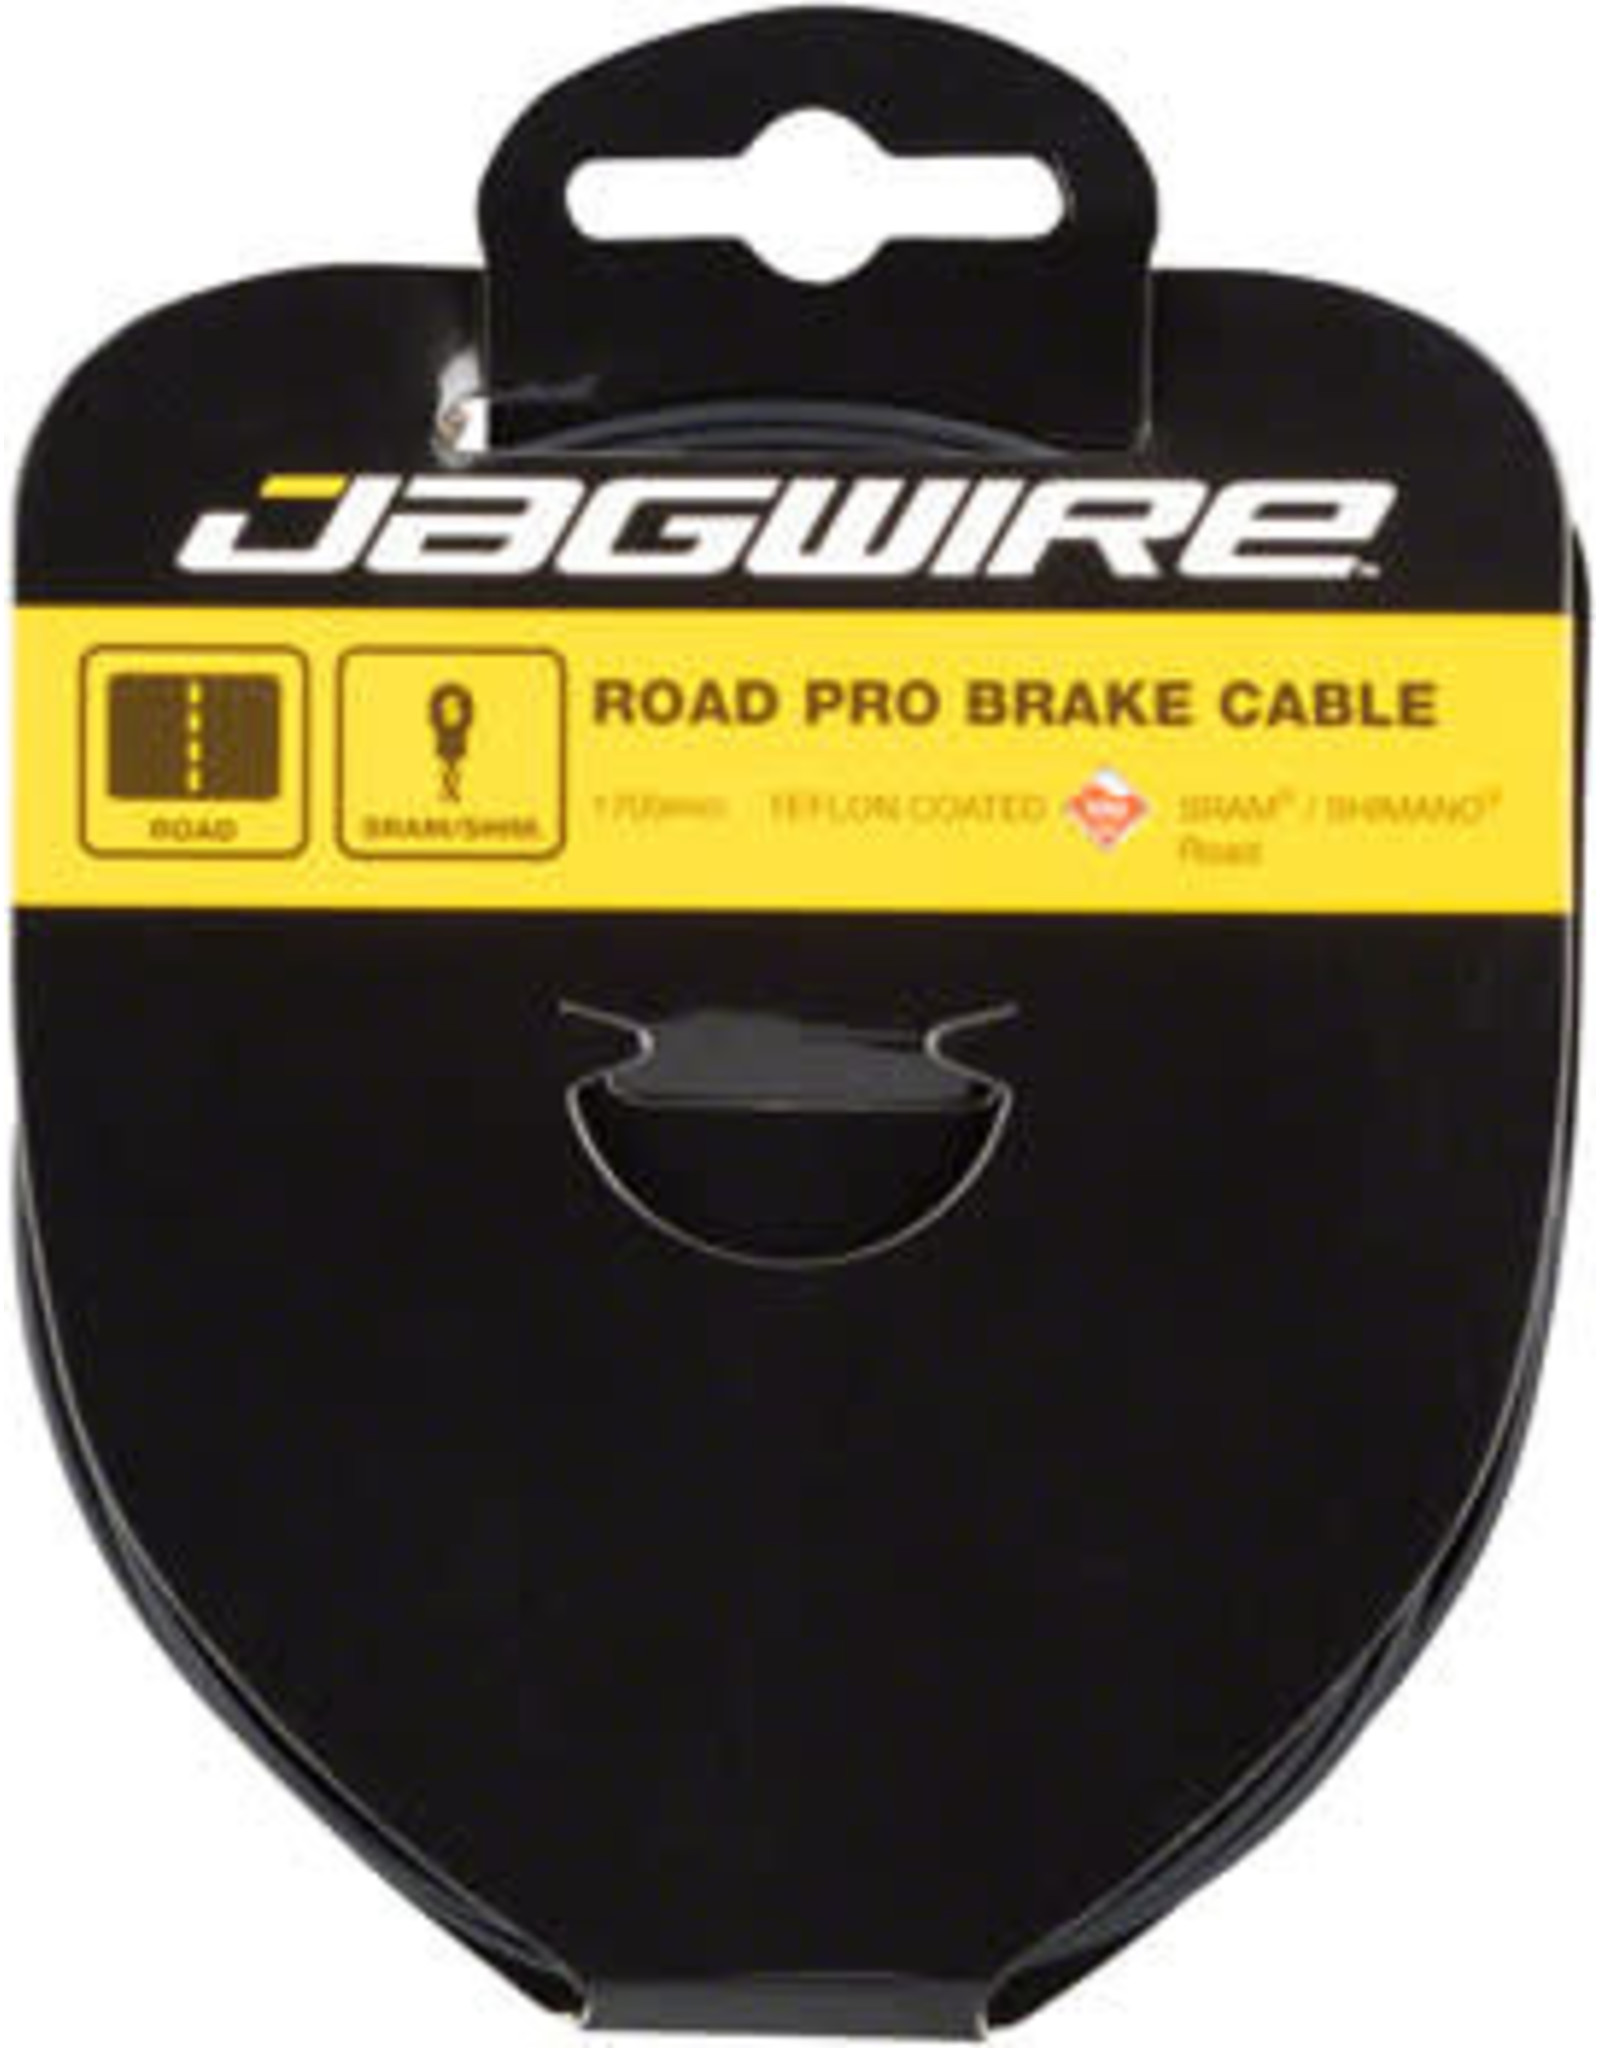 JAGWIRE Jagwire Teflon/Stainless Brake Wire 2750mm Shimano Road